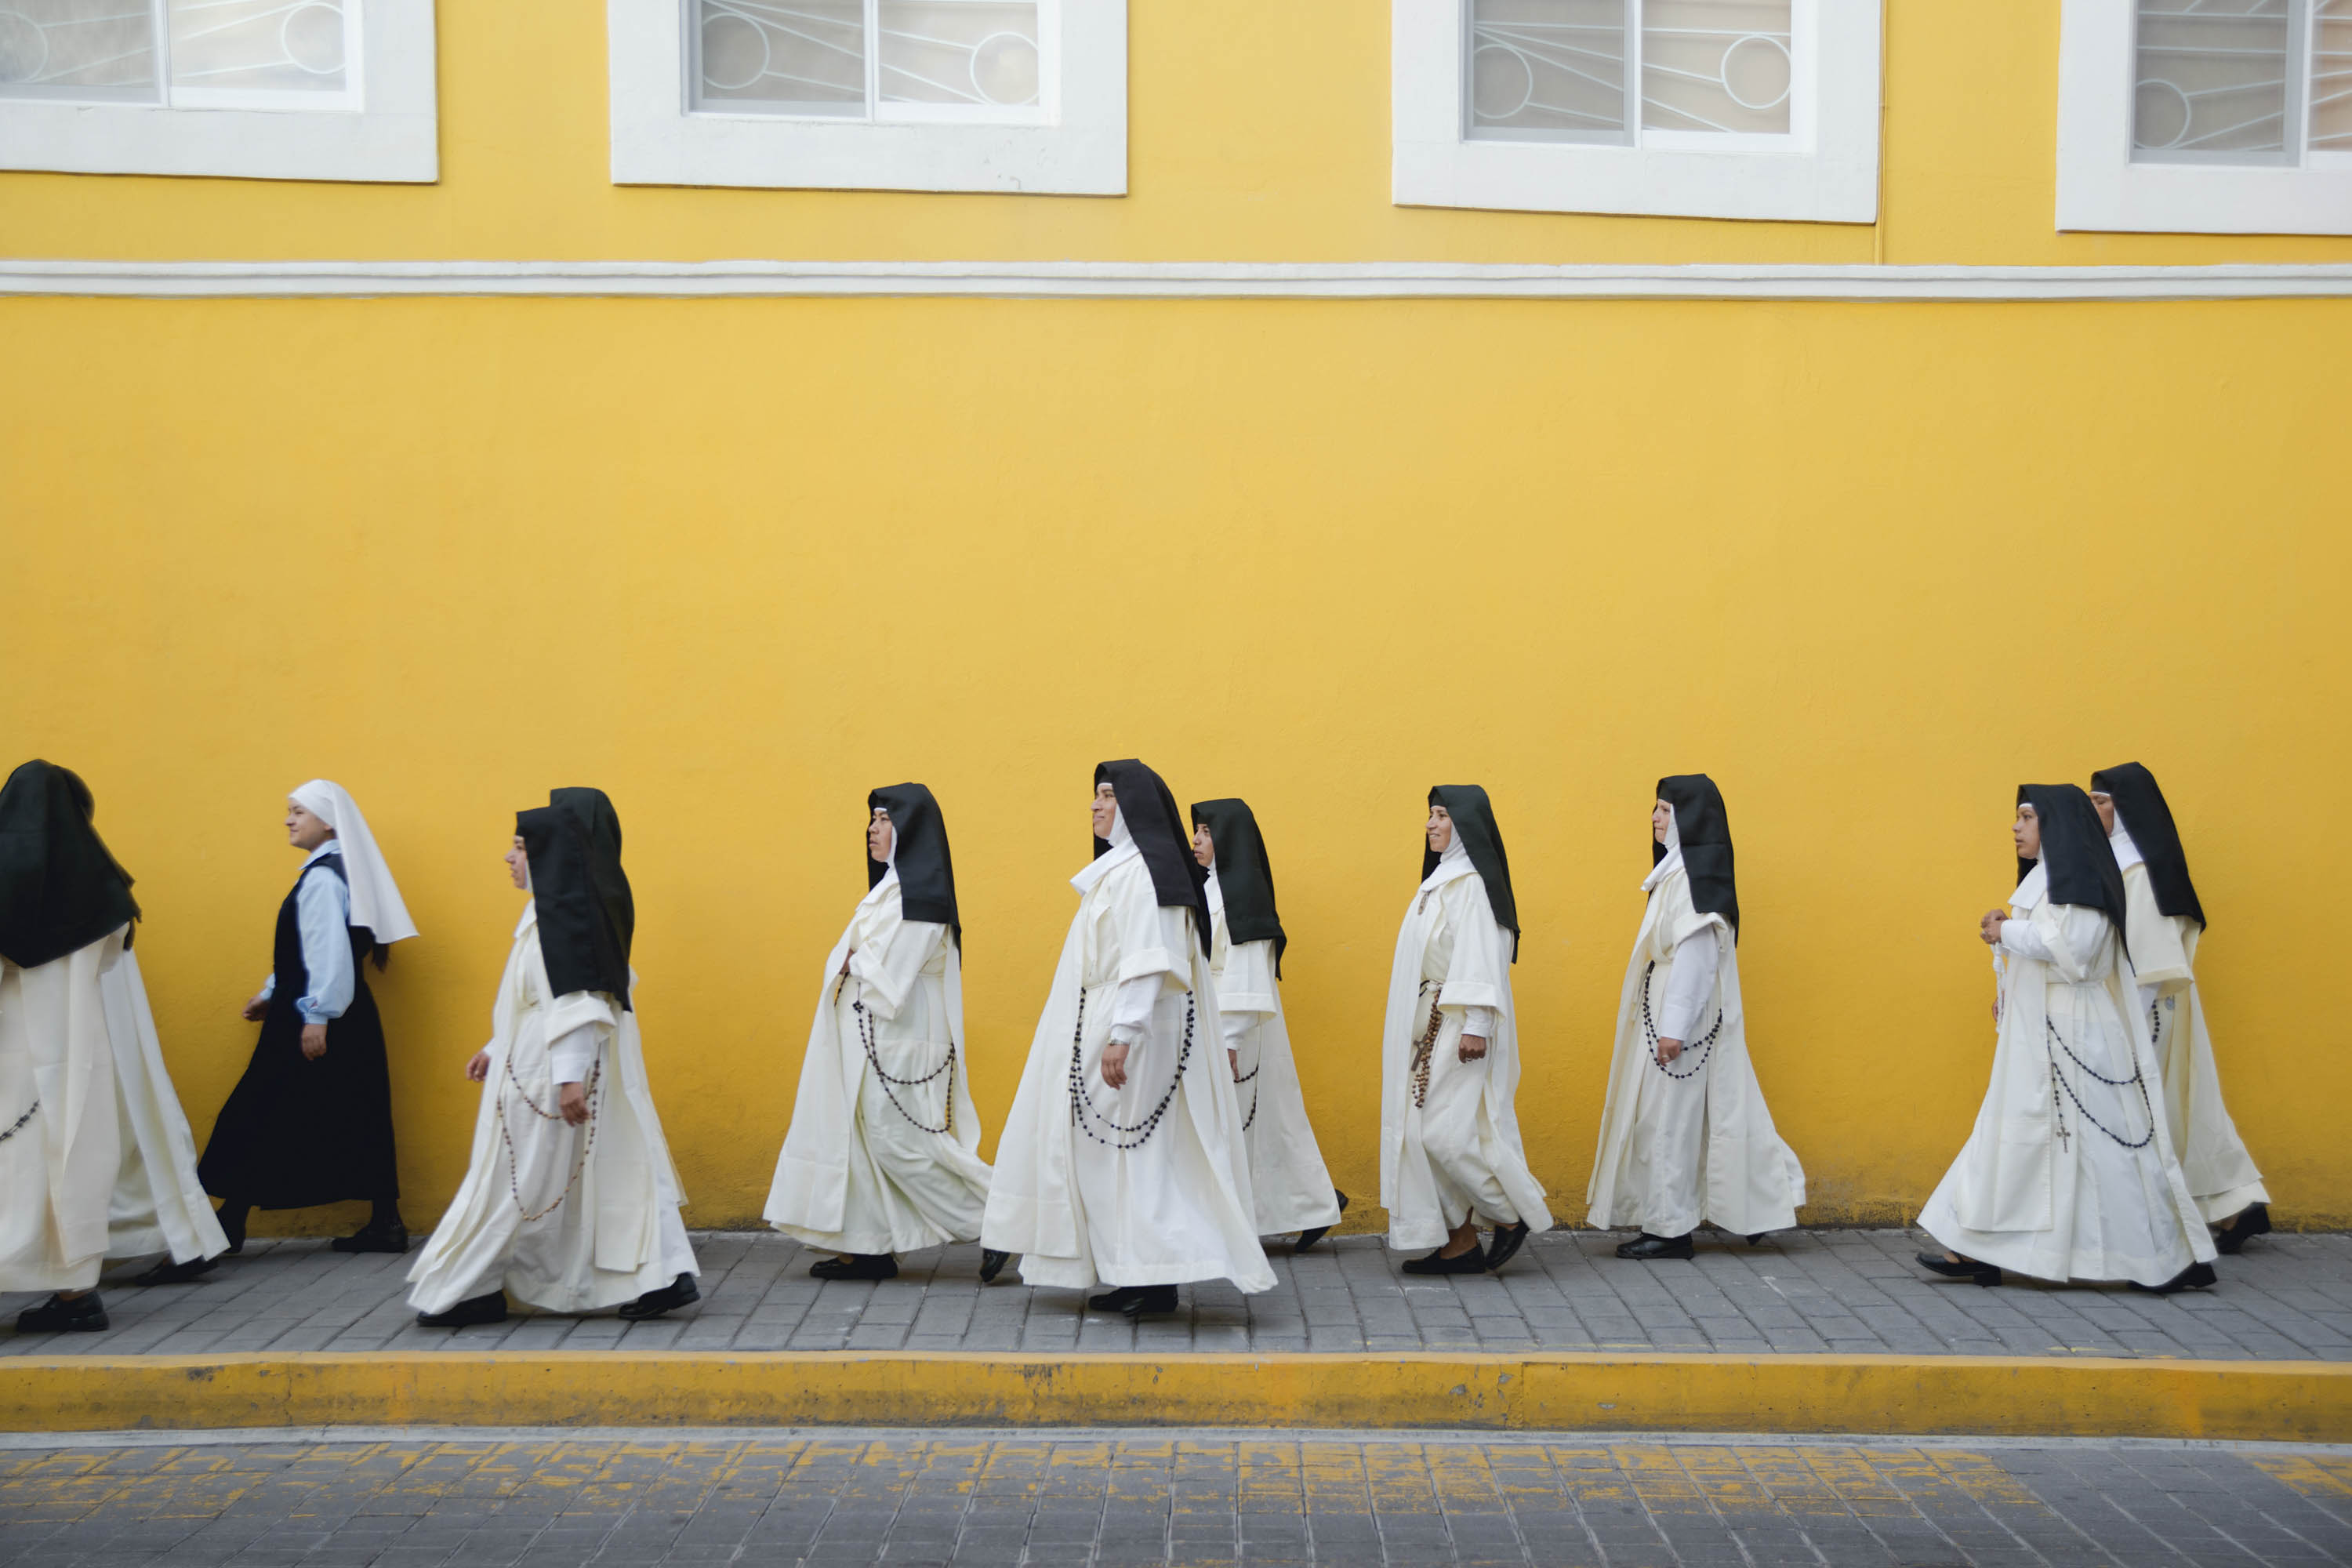 Жизнь в монастыре истории. Монахини в монастыре. Жизнь монахинь в женском монастыре. Женский католический монастырь. Католическая монахиня.